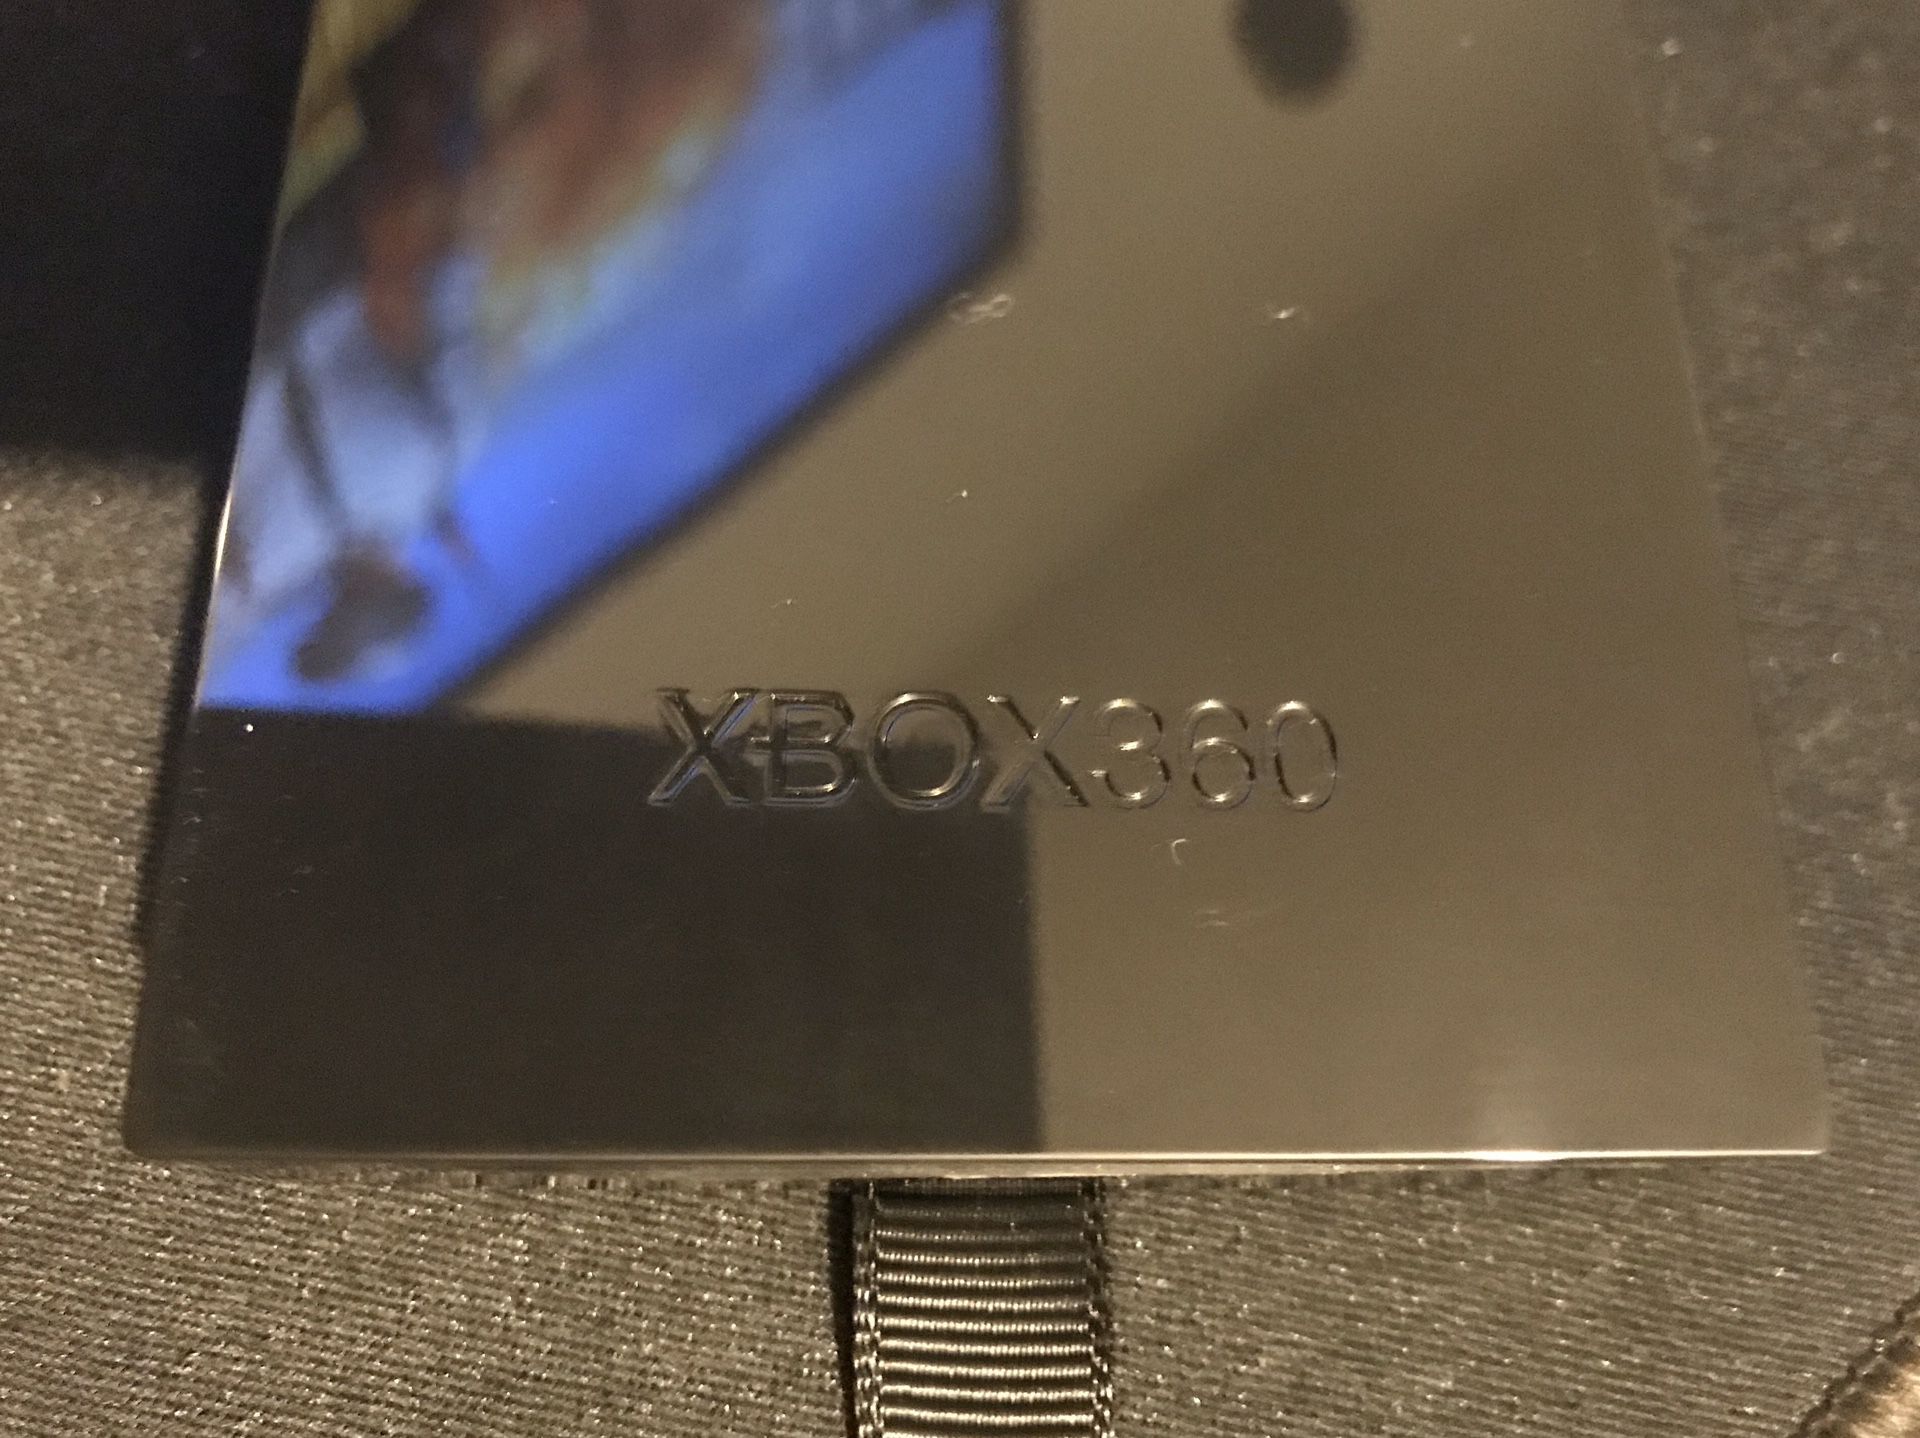 Xbox 360 120g hard drive